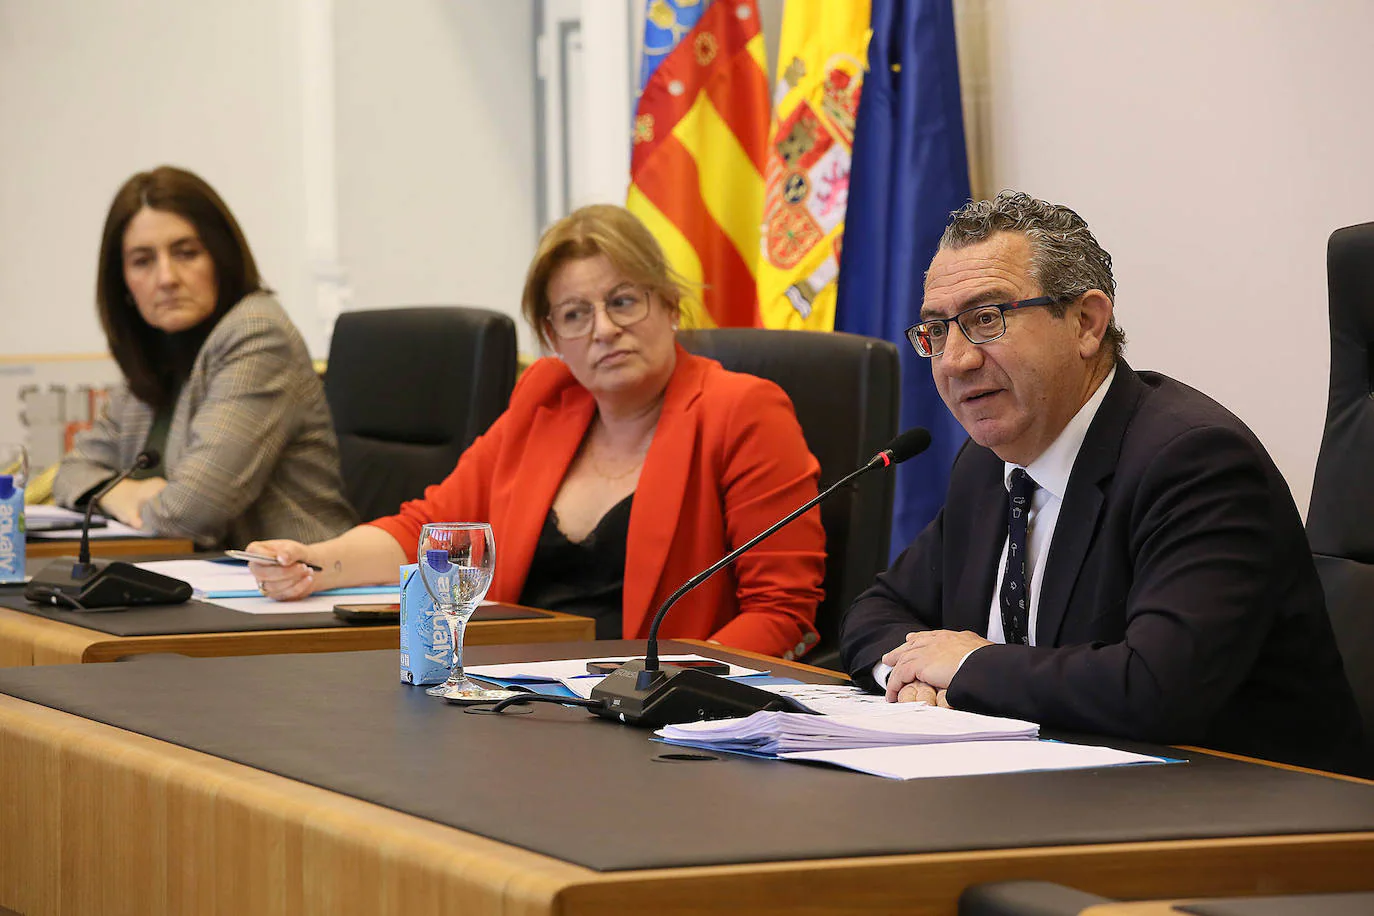 Toni Pérez interviene en el pleno de presupuestos ante la mirada de Ana Serna y Marina Sáez.